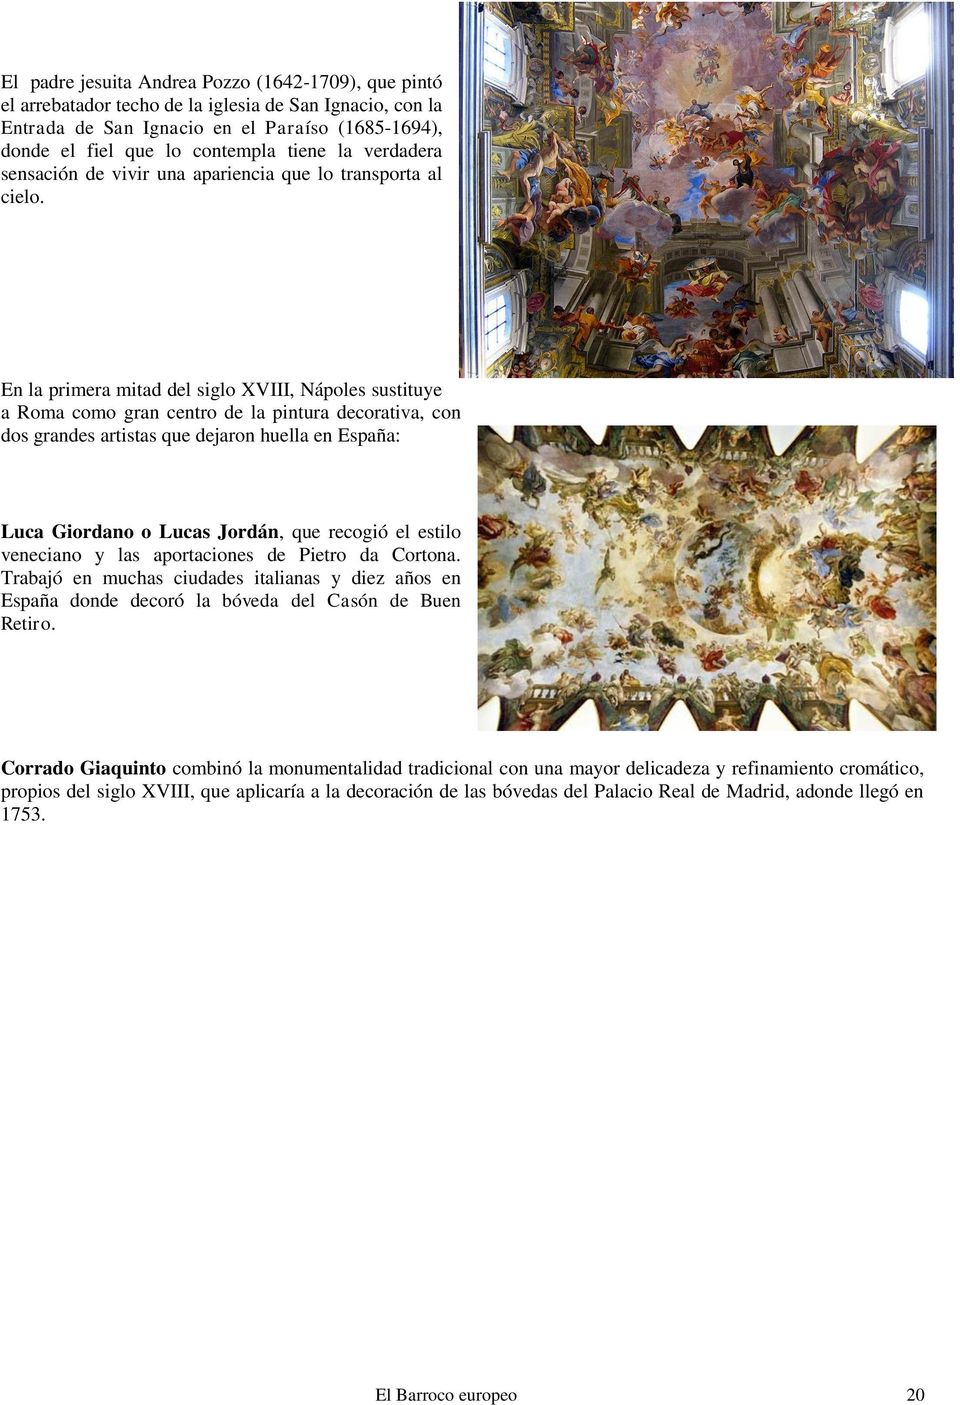 En la primera mitad del siglo XVIII, Nápoles sustituye a Roma como gran centro de la pintura decorativa, con dos grandes artistas que dejaron huella en España: Luca Giordano o Lucas Jordán, que